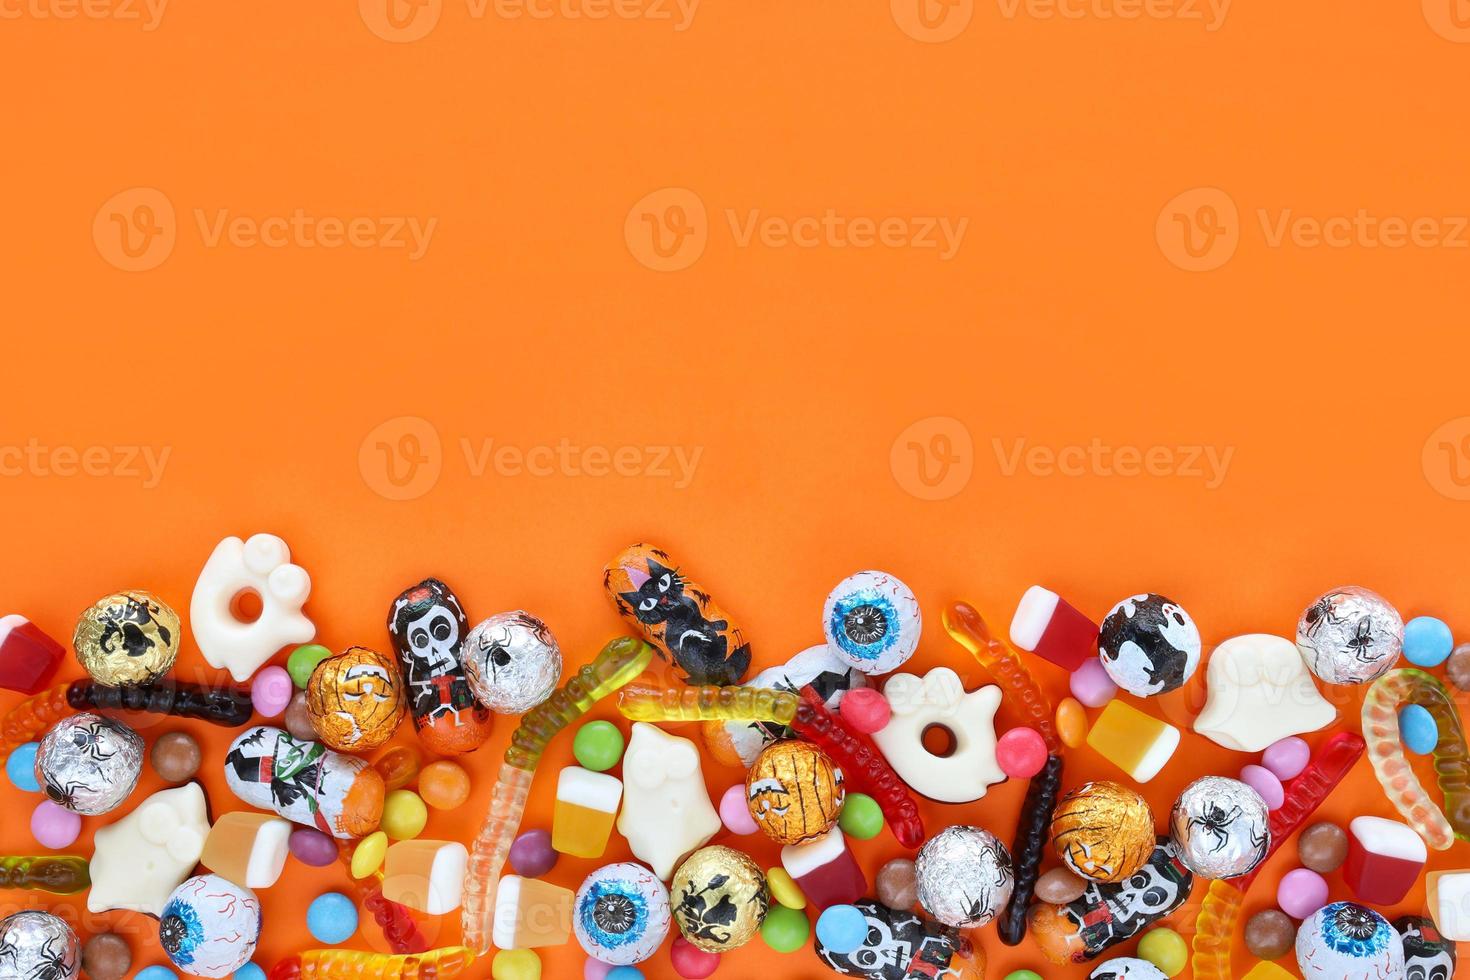 fond orange avec espace de copie, bonbons assortis d'halloween en bas - chocolats traditionnels aux globes oculaires, vers de gelée, fantômes. bonne vente de vacances d'halloween et concept trick-or-treat. photo